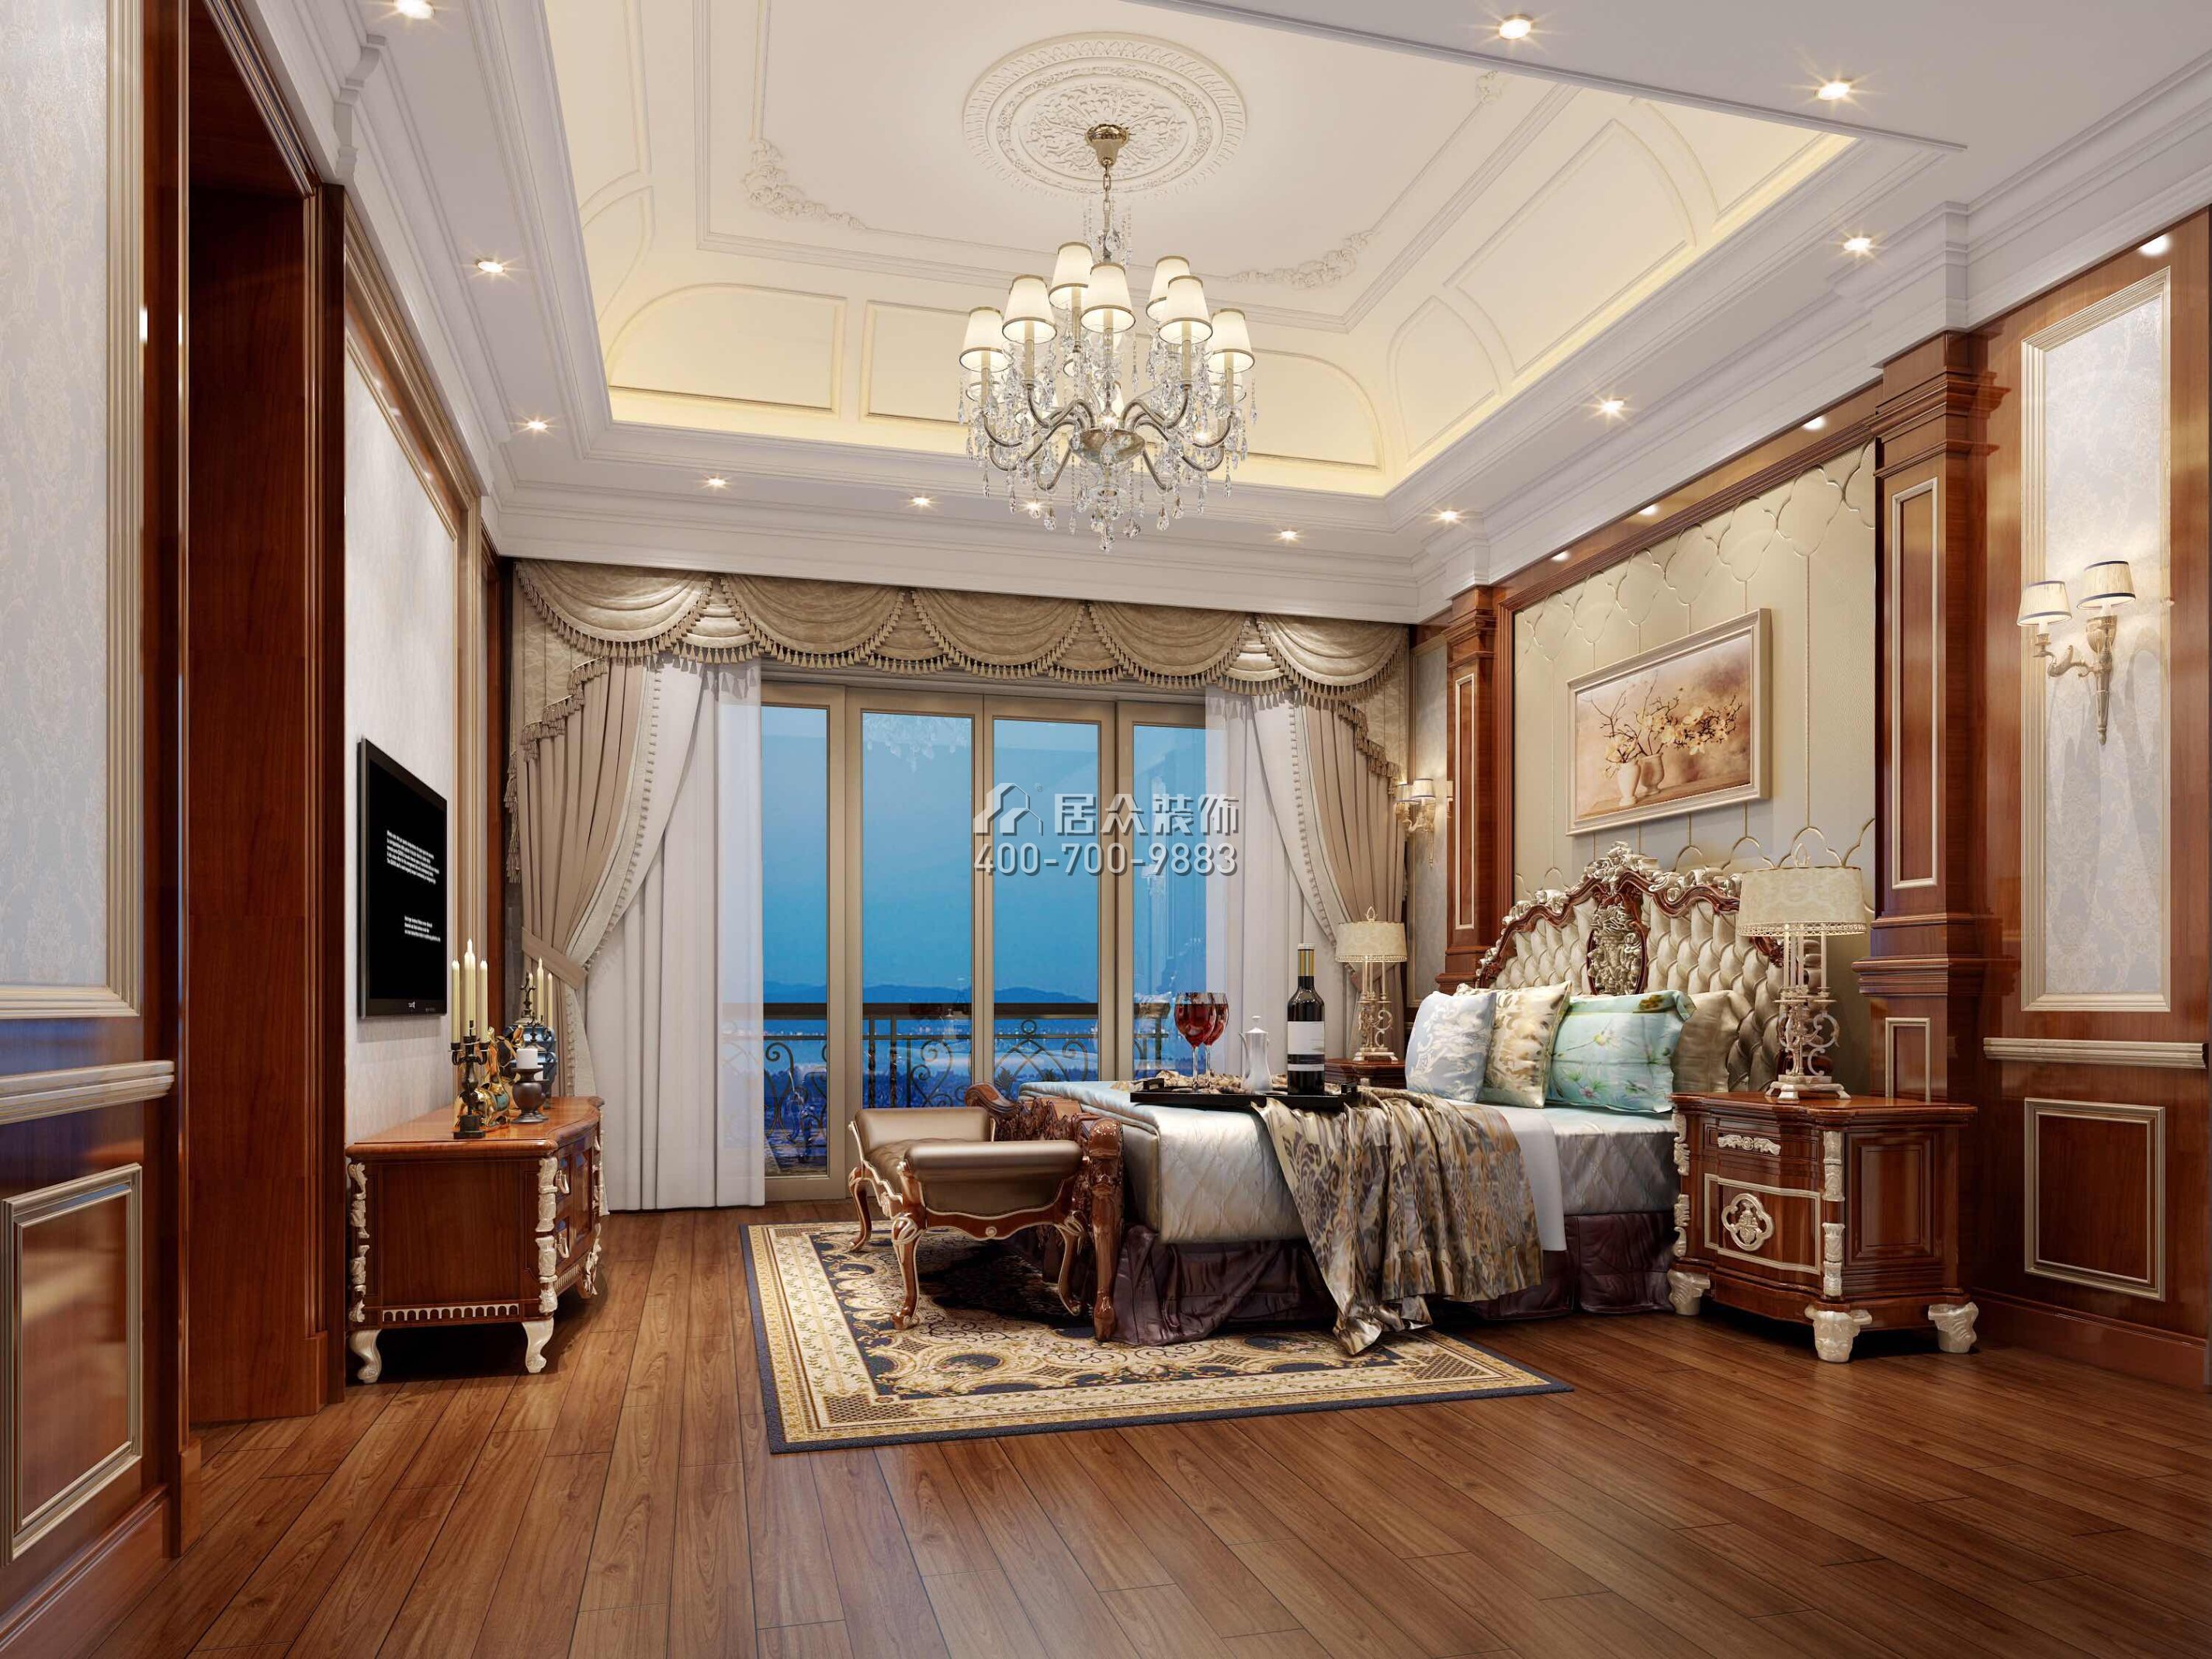 海逸豪庭321平方米歐式風格別墅戶型臥室裝修效果圖